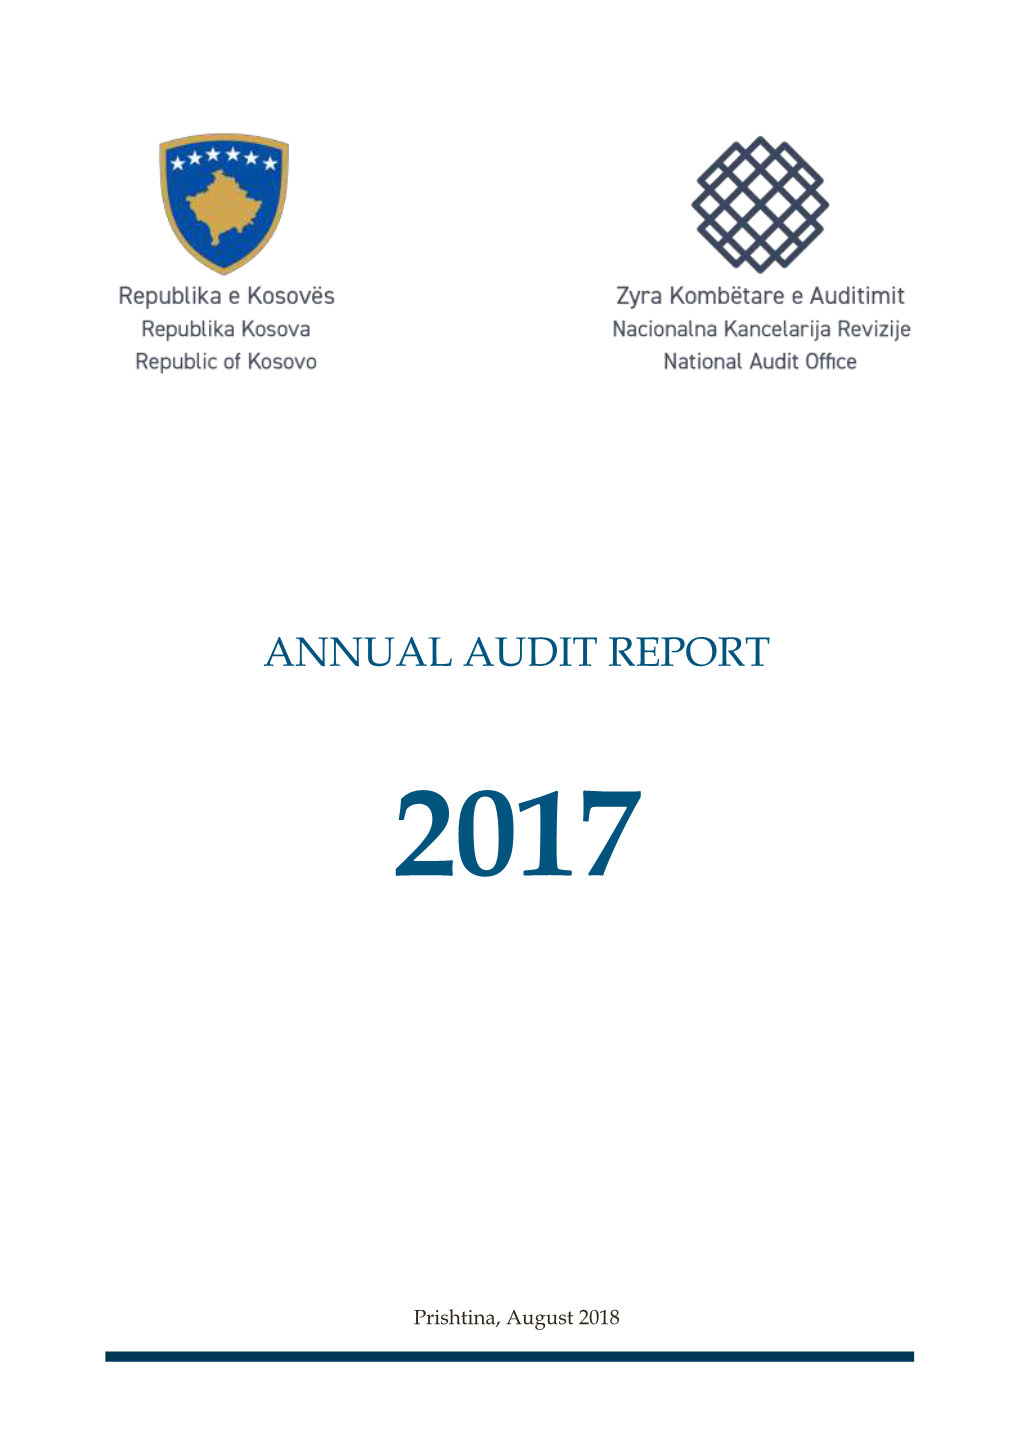 Annual Audit Report 2017